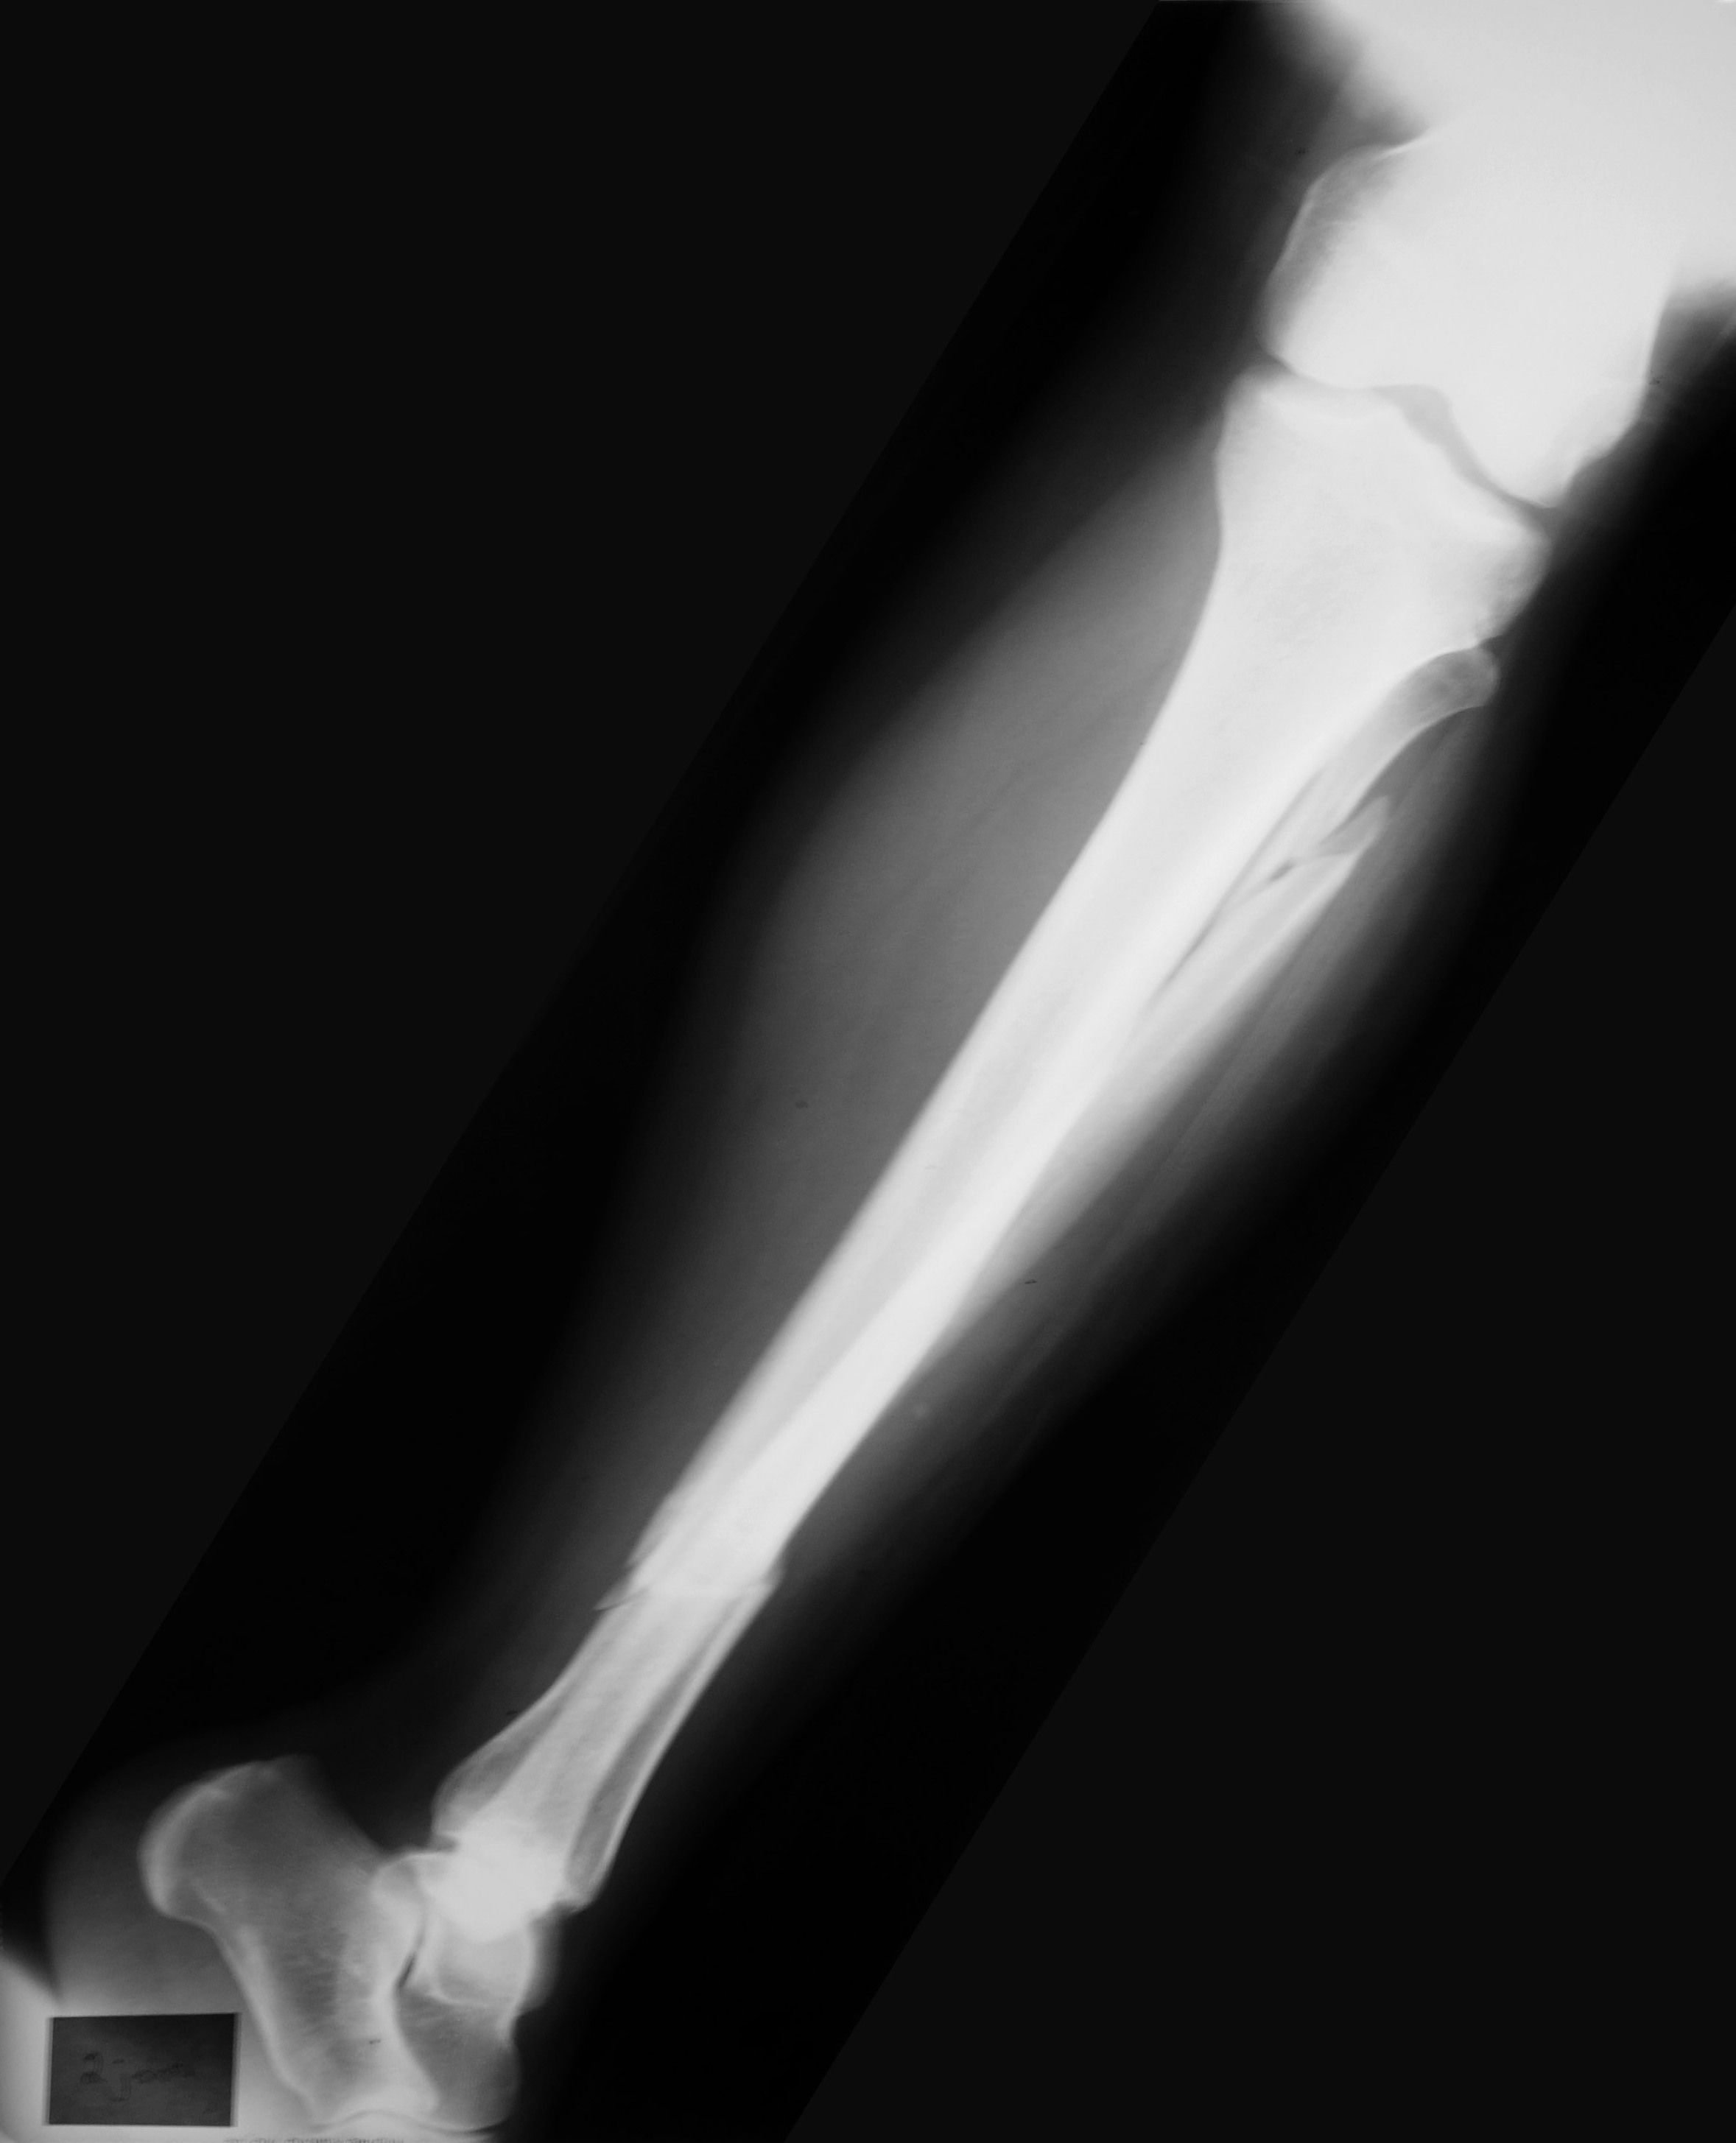 Трещина кости на ноге